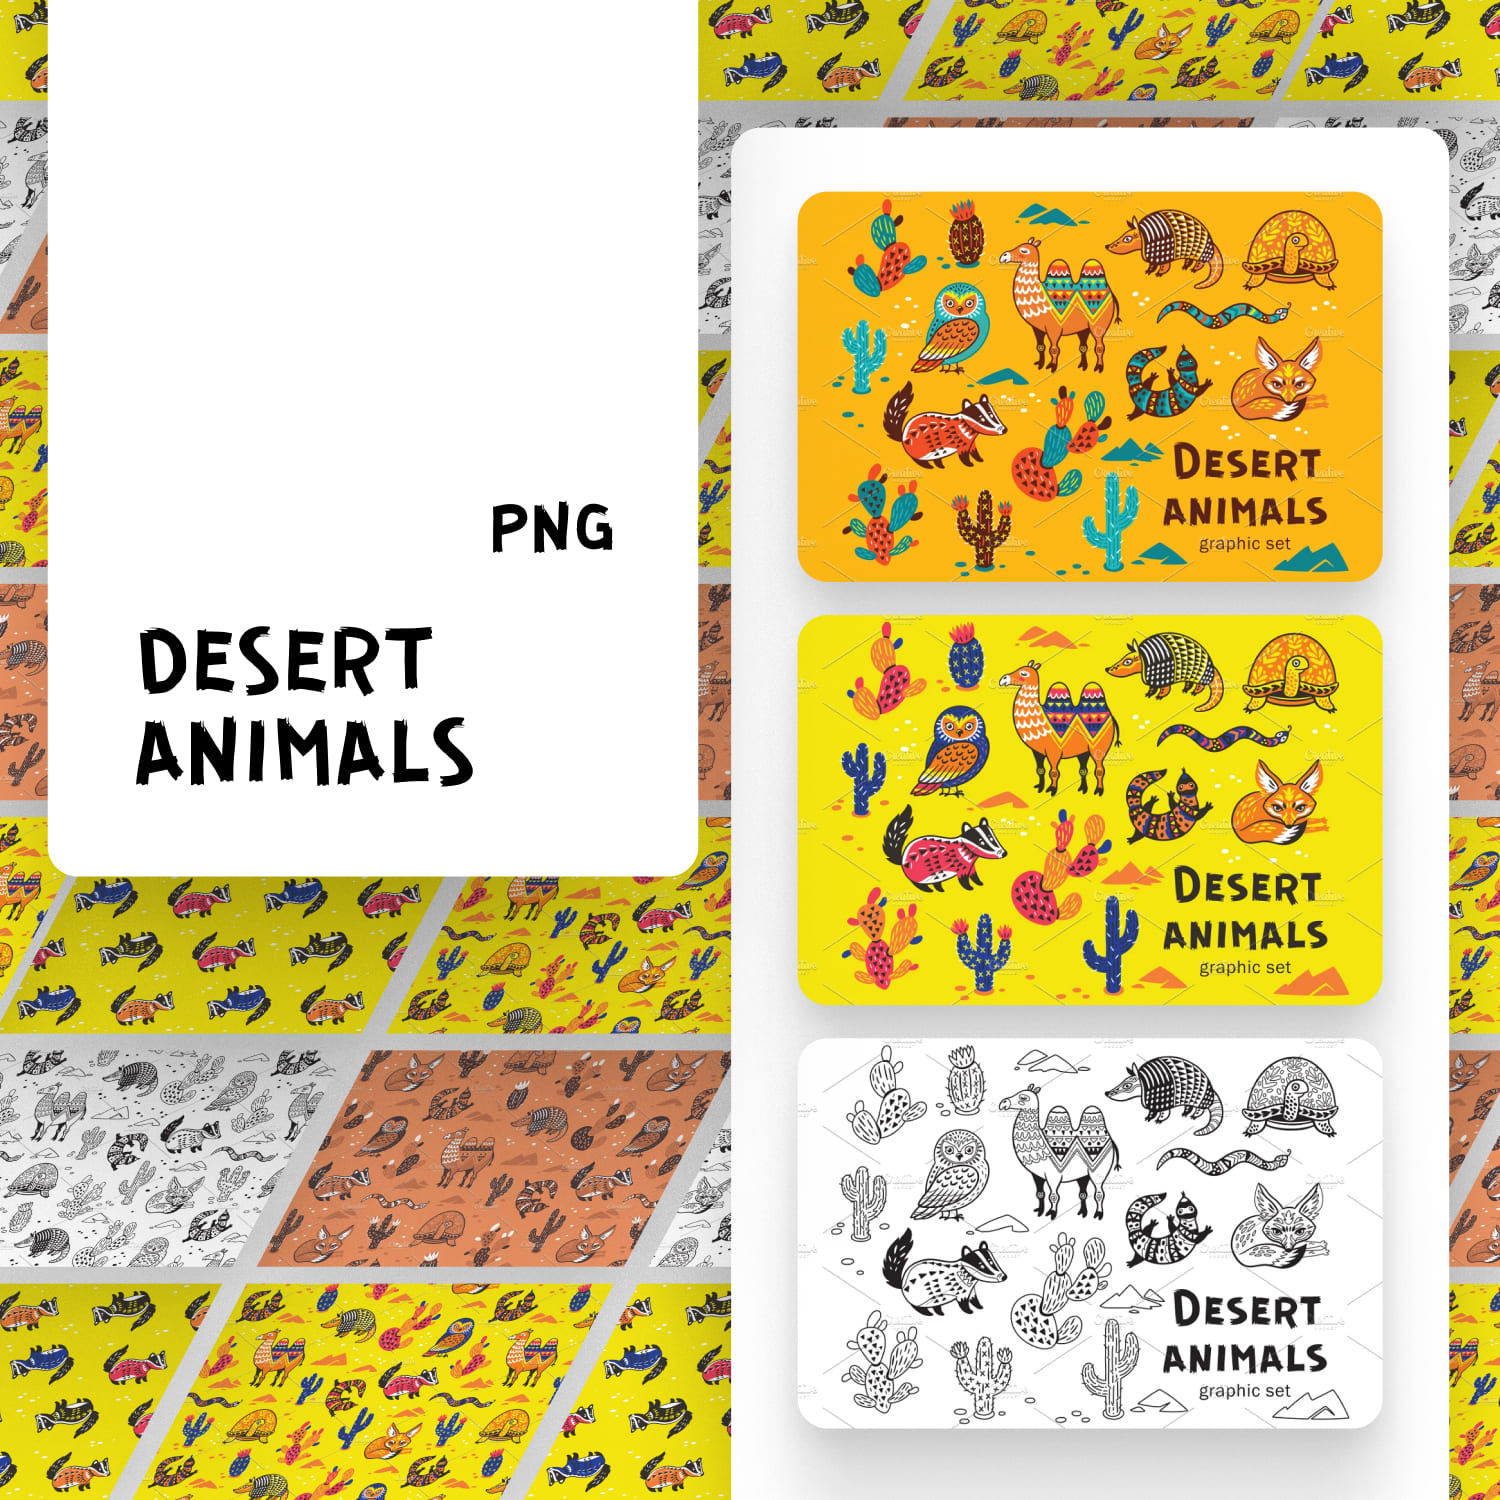 Desert animals.